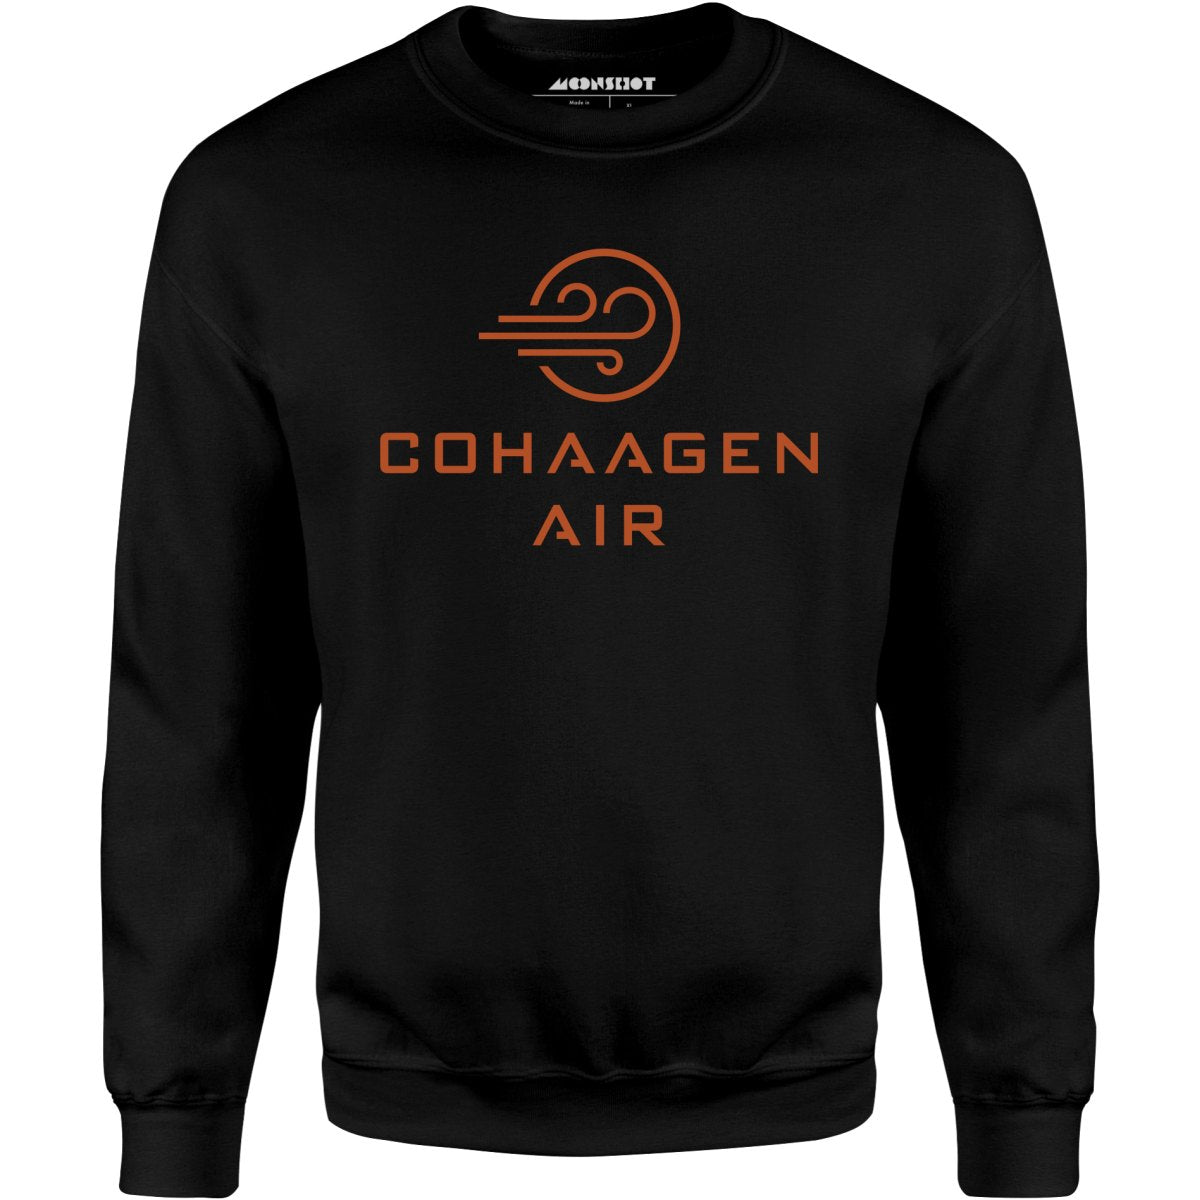 Cohaagen Air - Total Recall - Unisex Sweatshirt